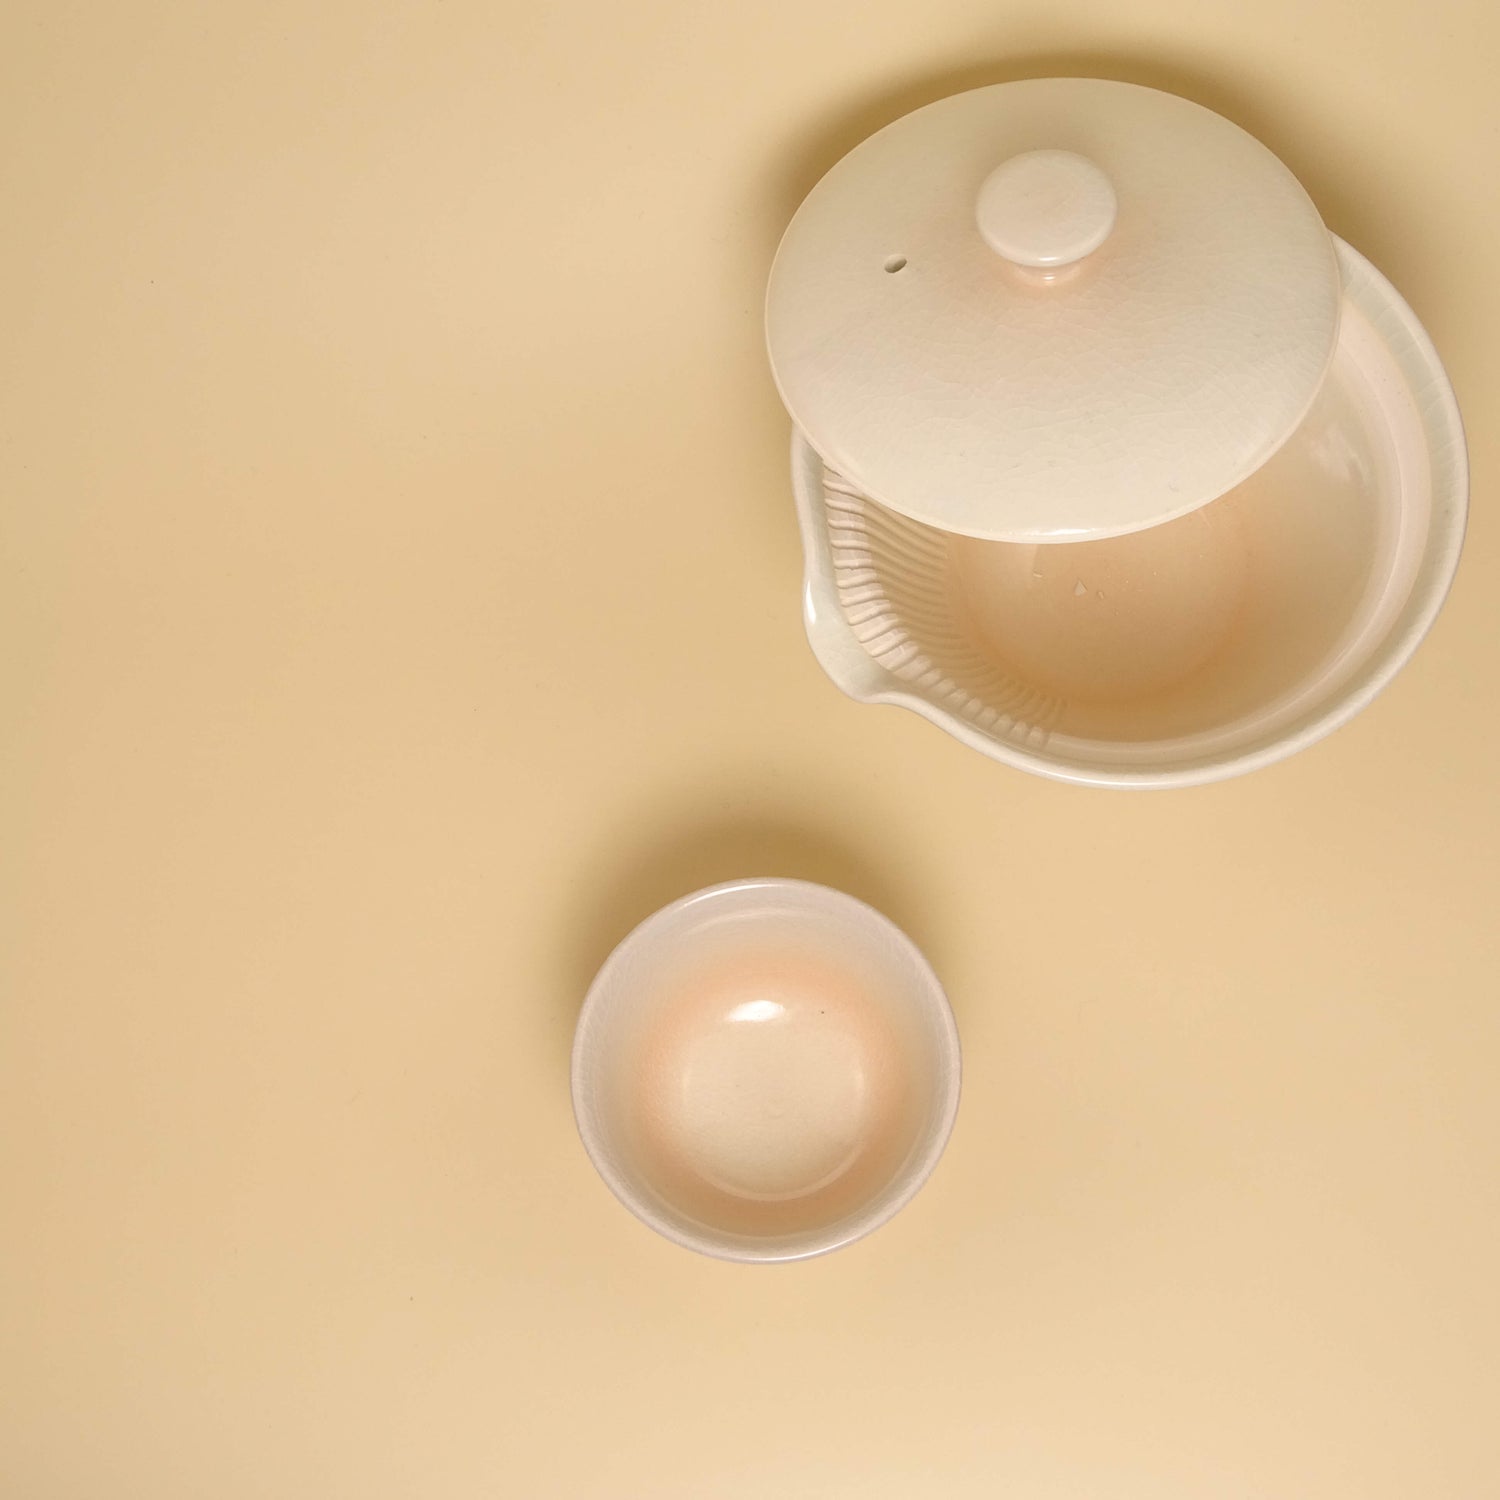 white shiboridashi set with cups